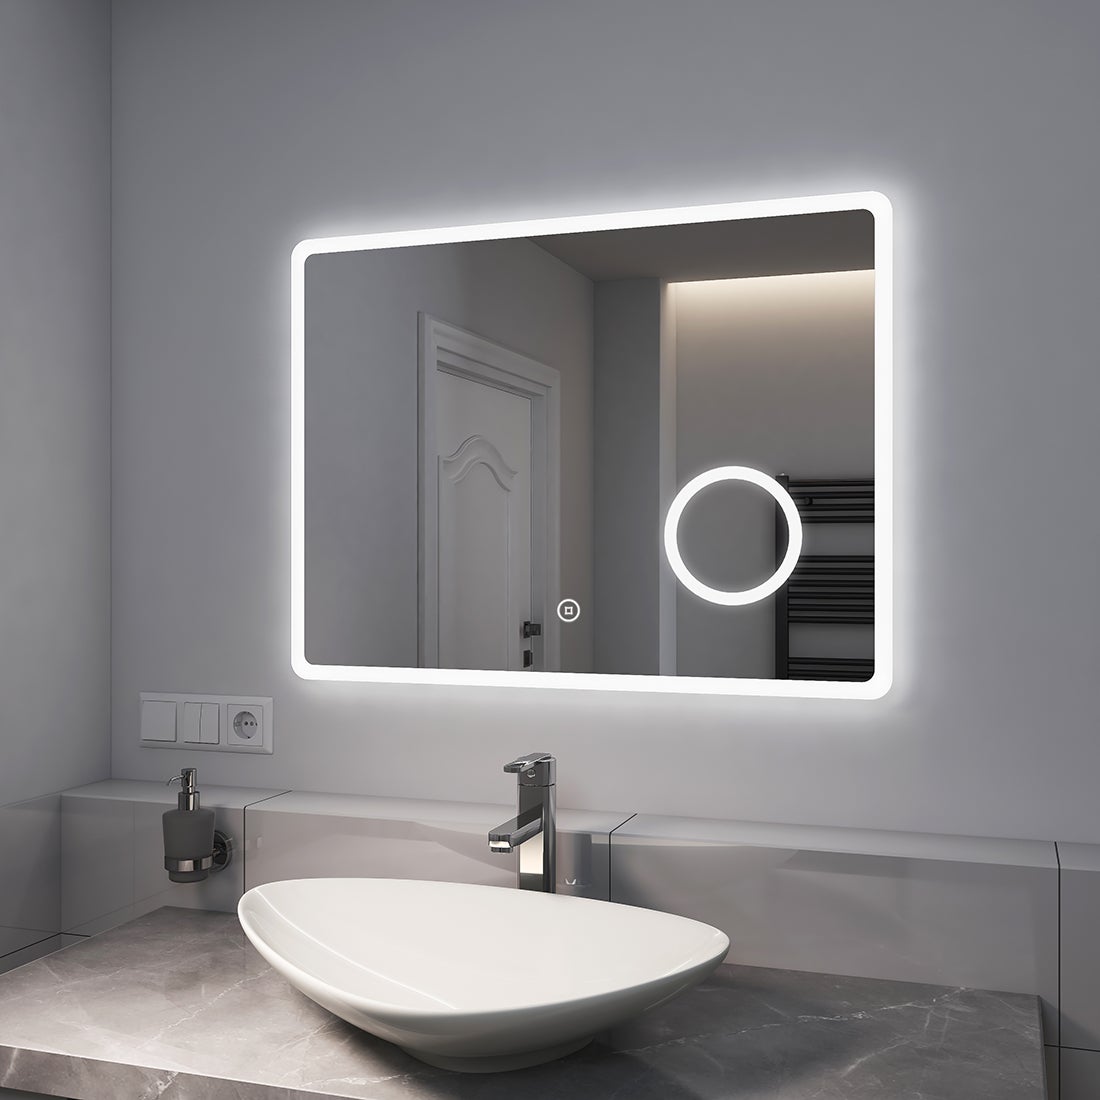 EMKE Badspiegel mit 3-fache Vergrößerung, LED Beleuchtung, 80x60cm, 3 Lichtfarben Dimmbar, Touch, Beschlagfrei